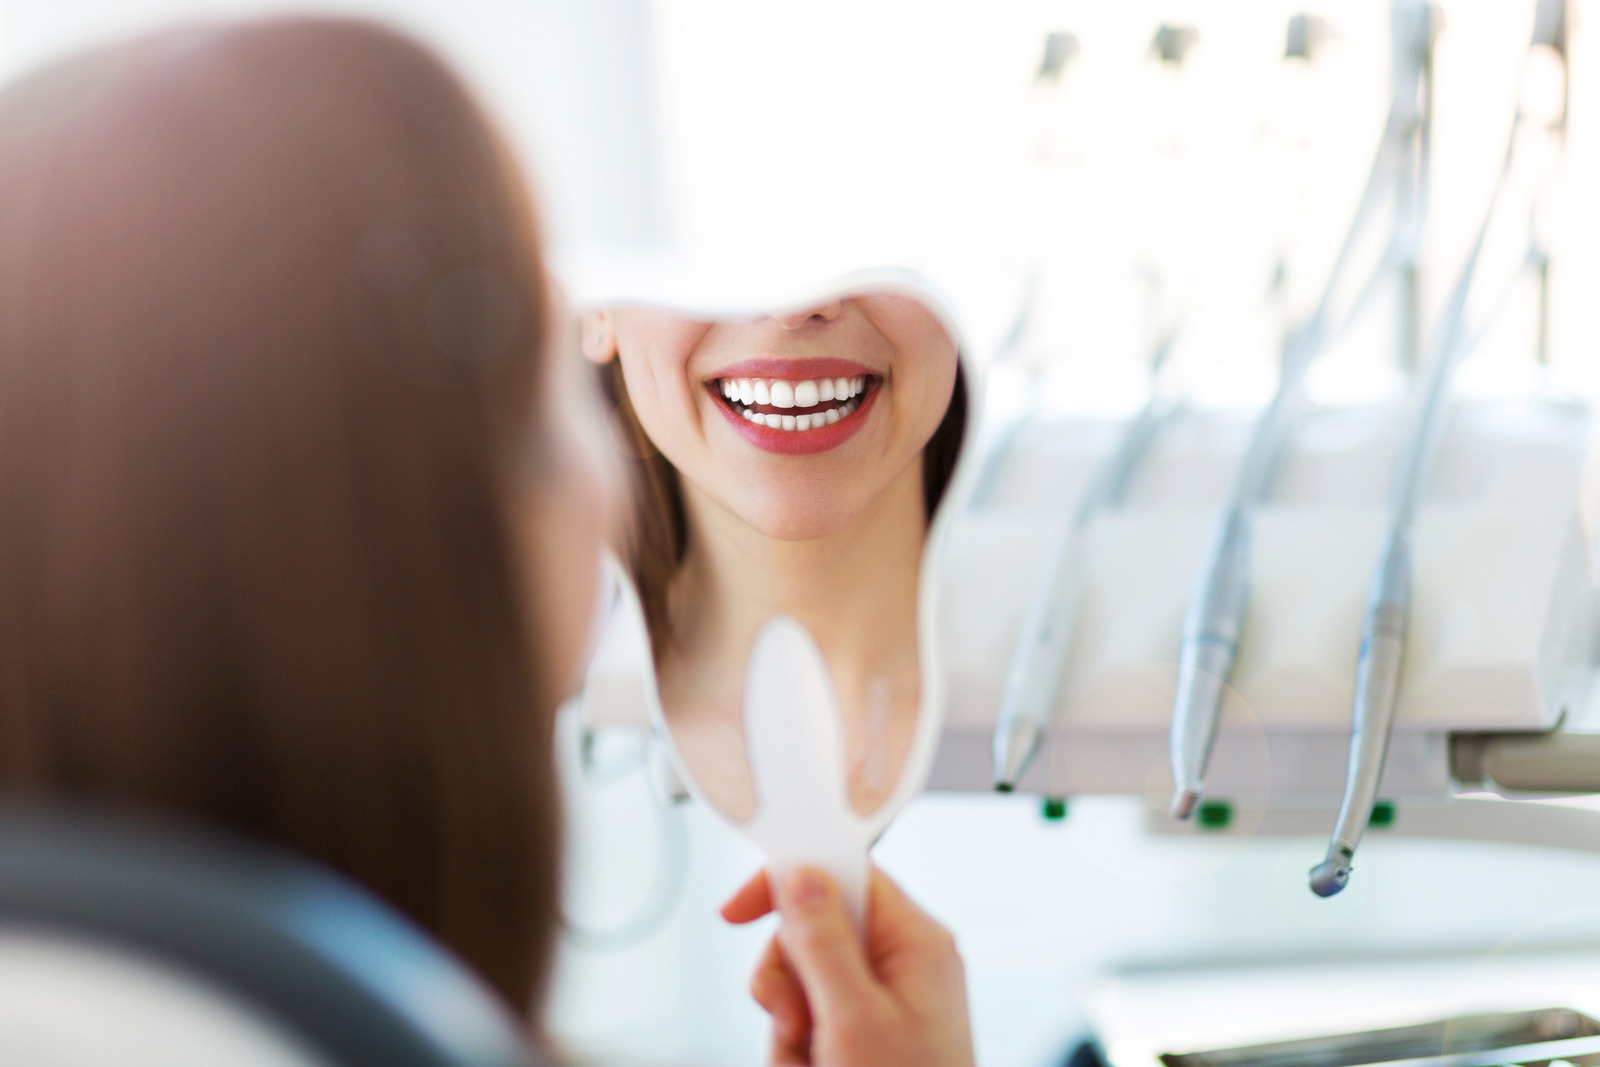 牙齦萎縮初期患者應該及早求醫